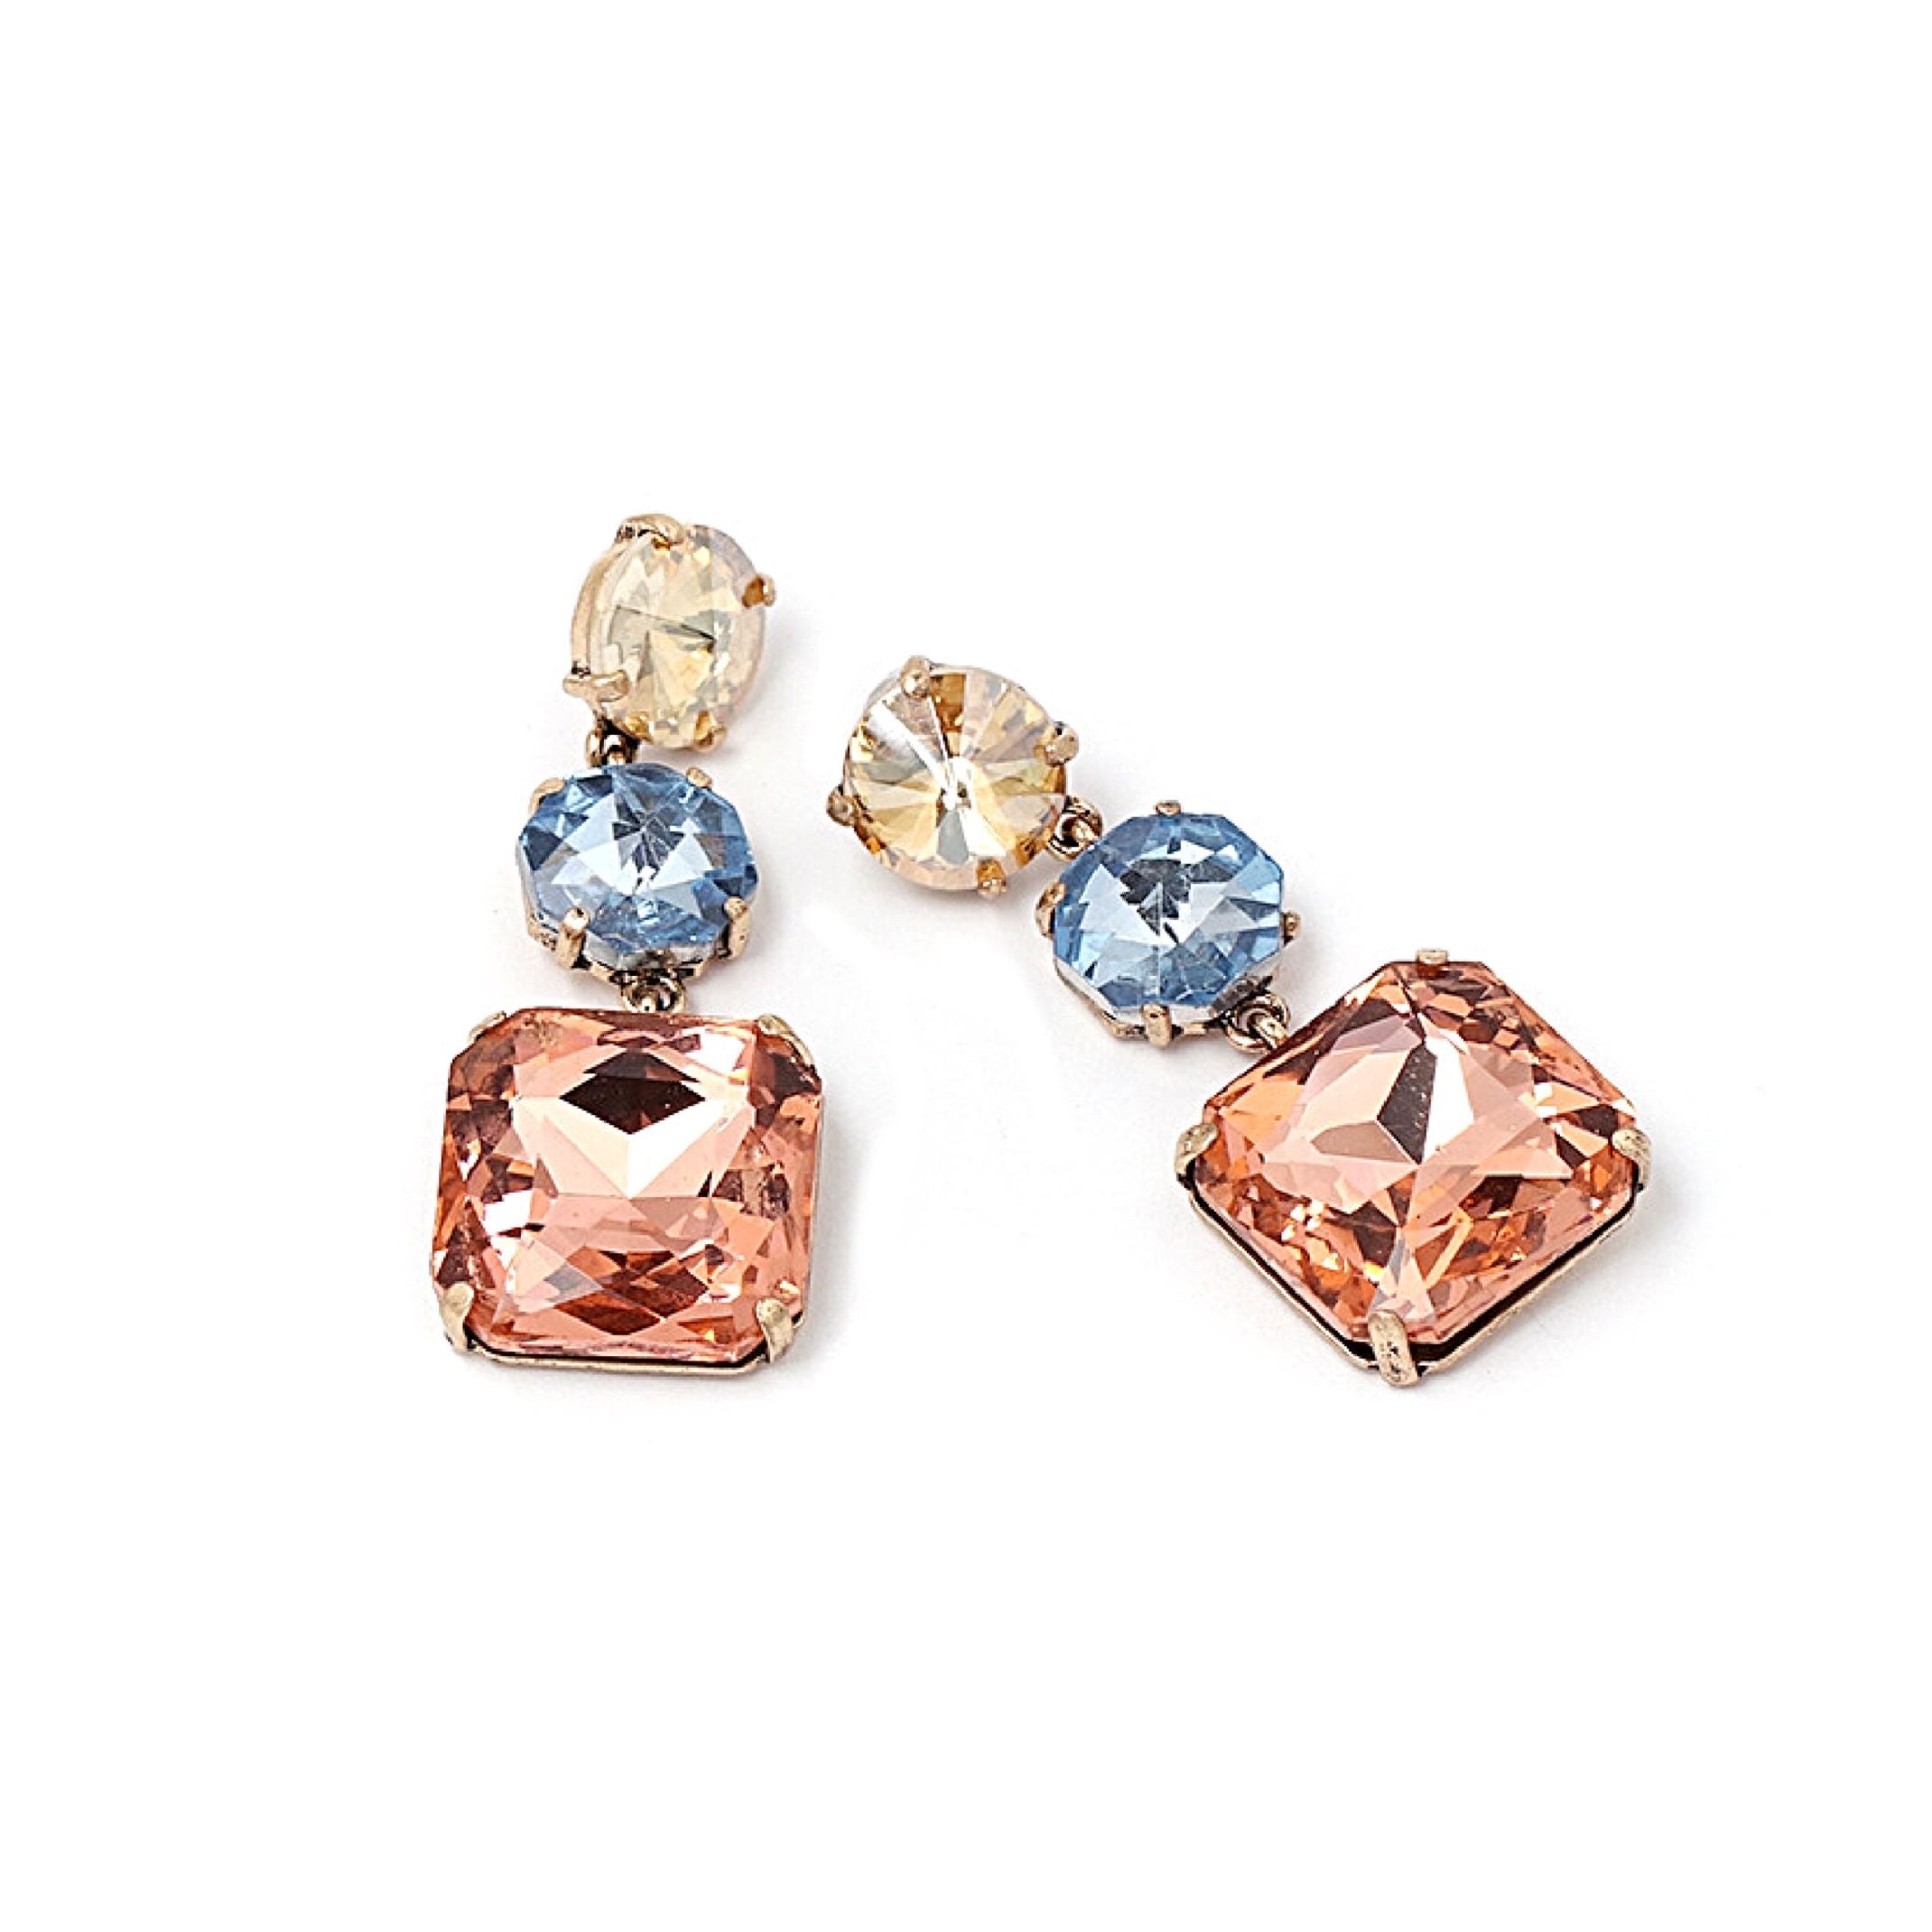 Sunset jewel earrings